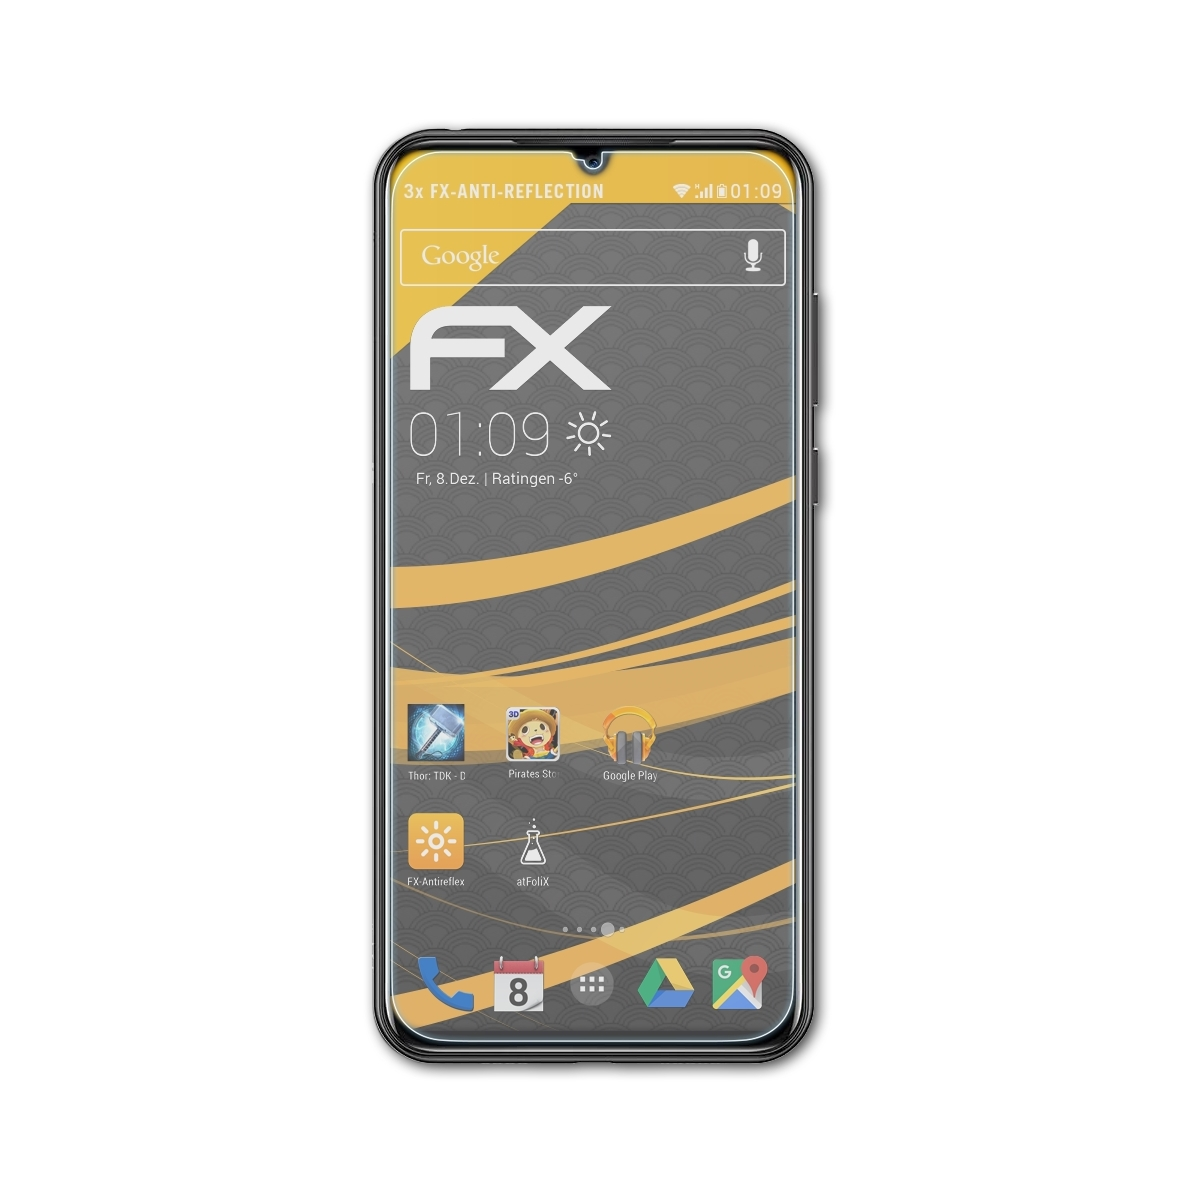 ATFOLIX 3x FX-Antireflex Displayschutz(für Doogee X95)